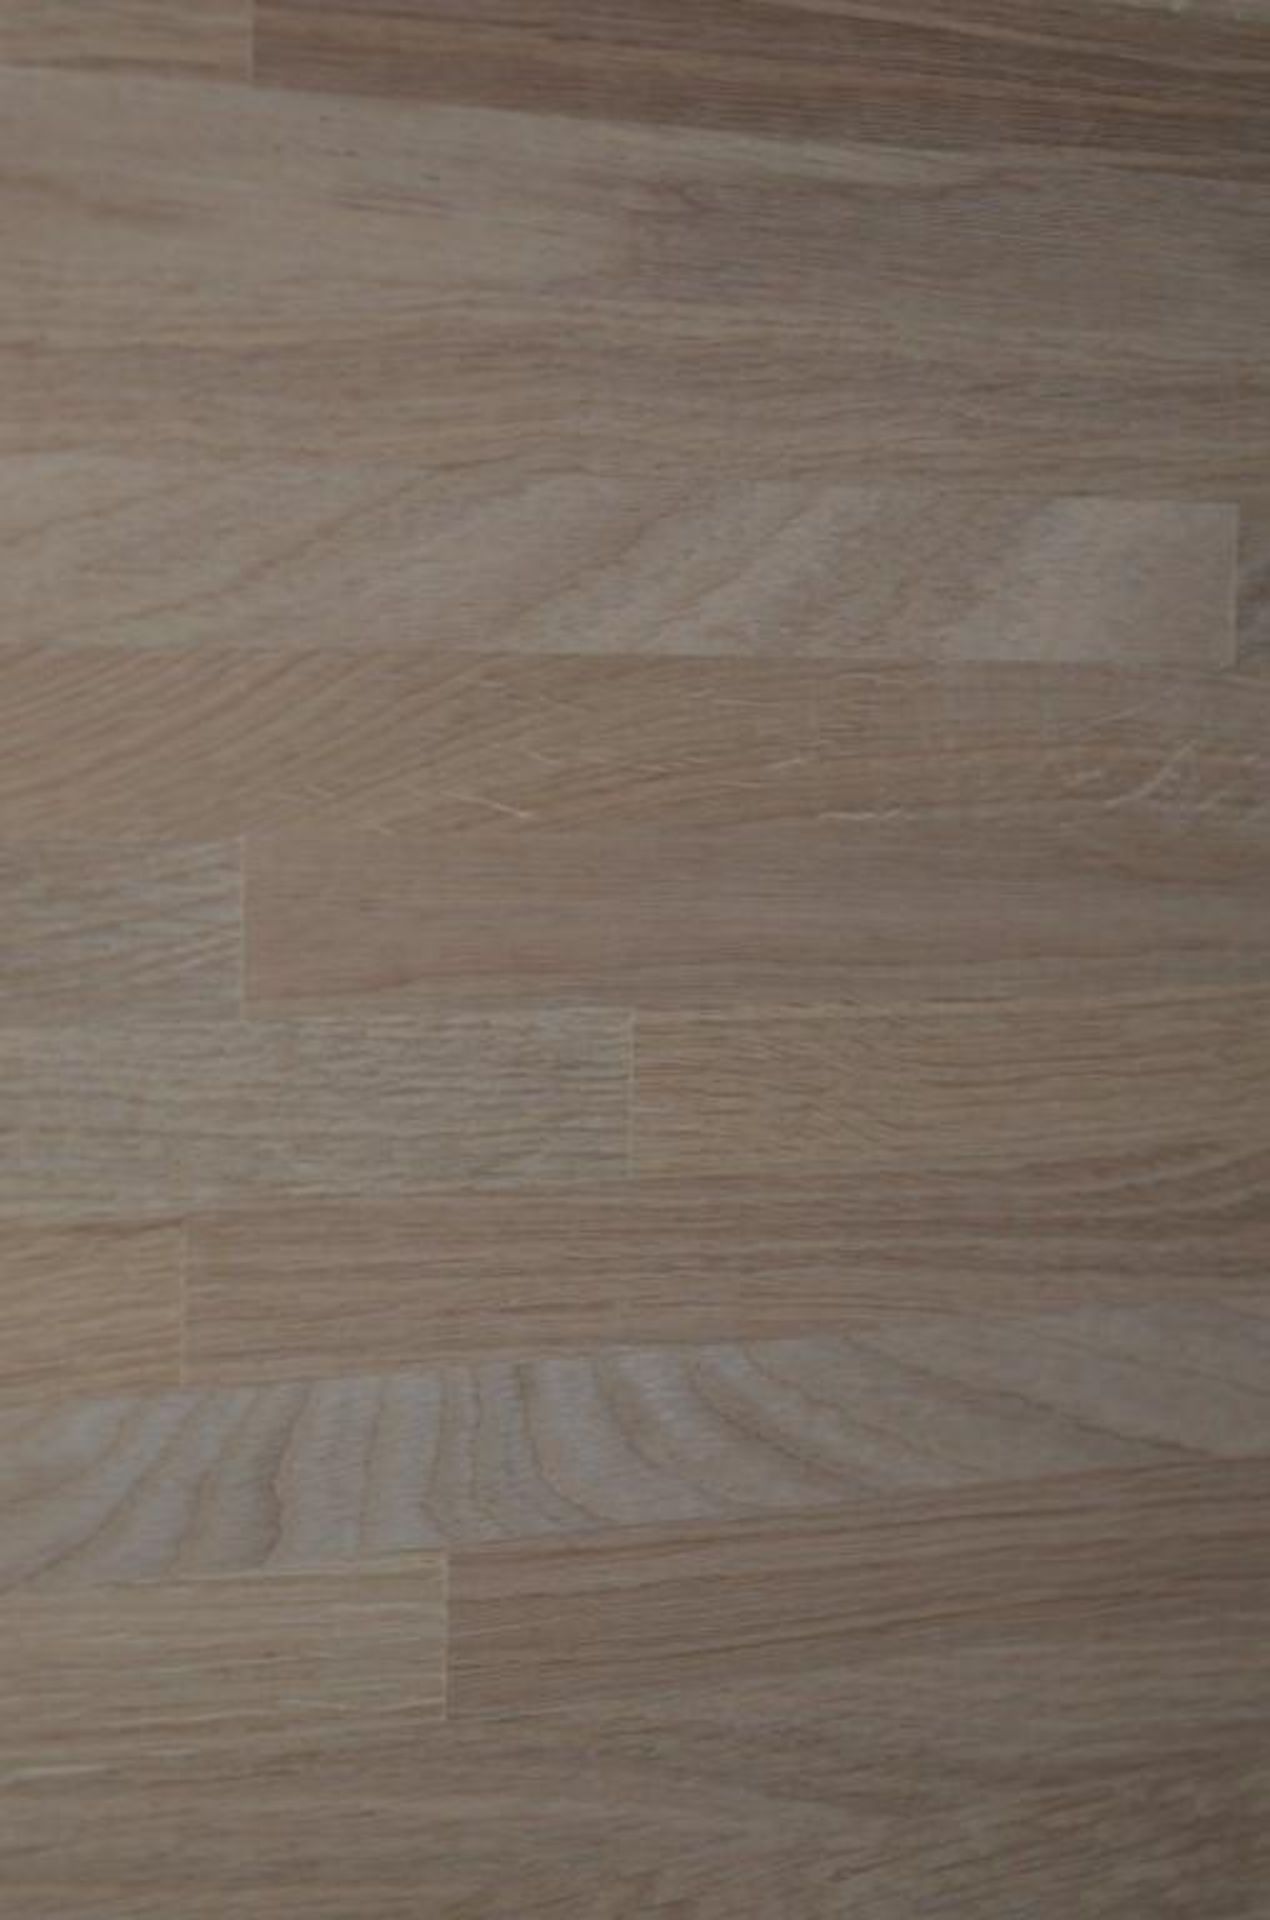 1 x Solid Wood Kitchen Worktop - OAK - Oak Blockwood Kitchen Worktop - Size: 3000 x 900 x 32mm - Unt - Image 2 of 3